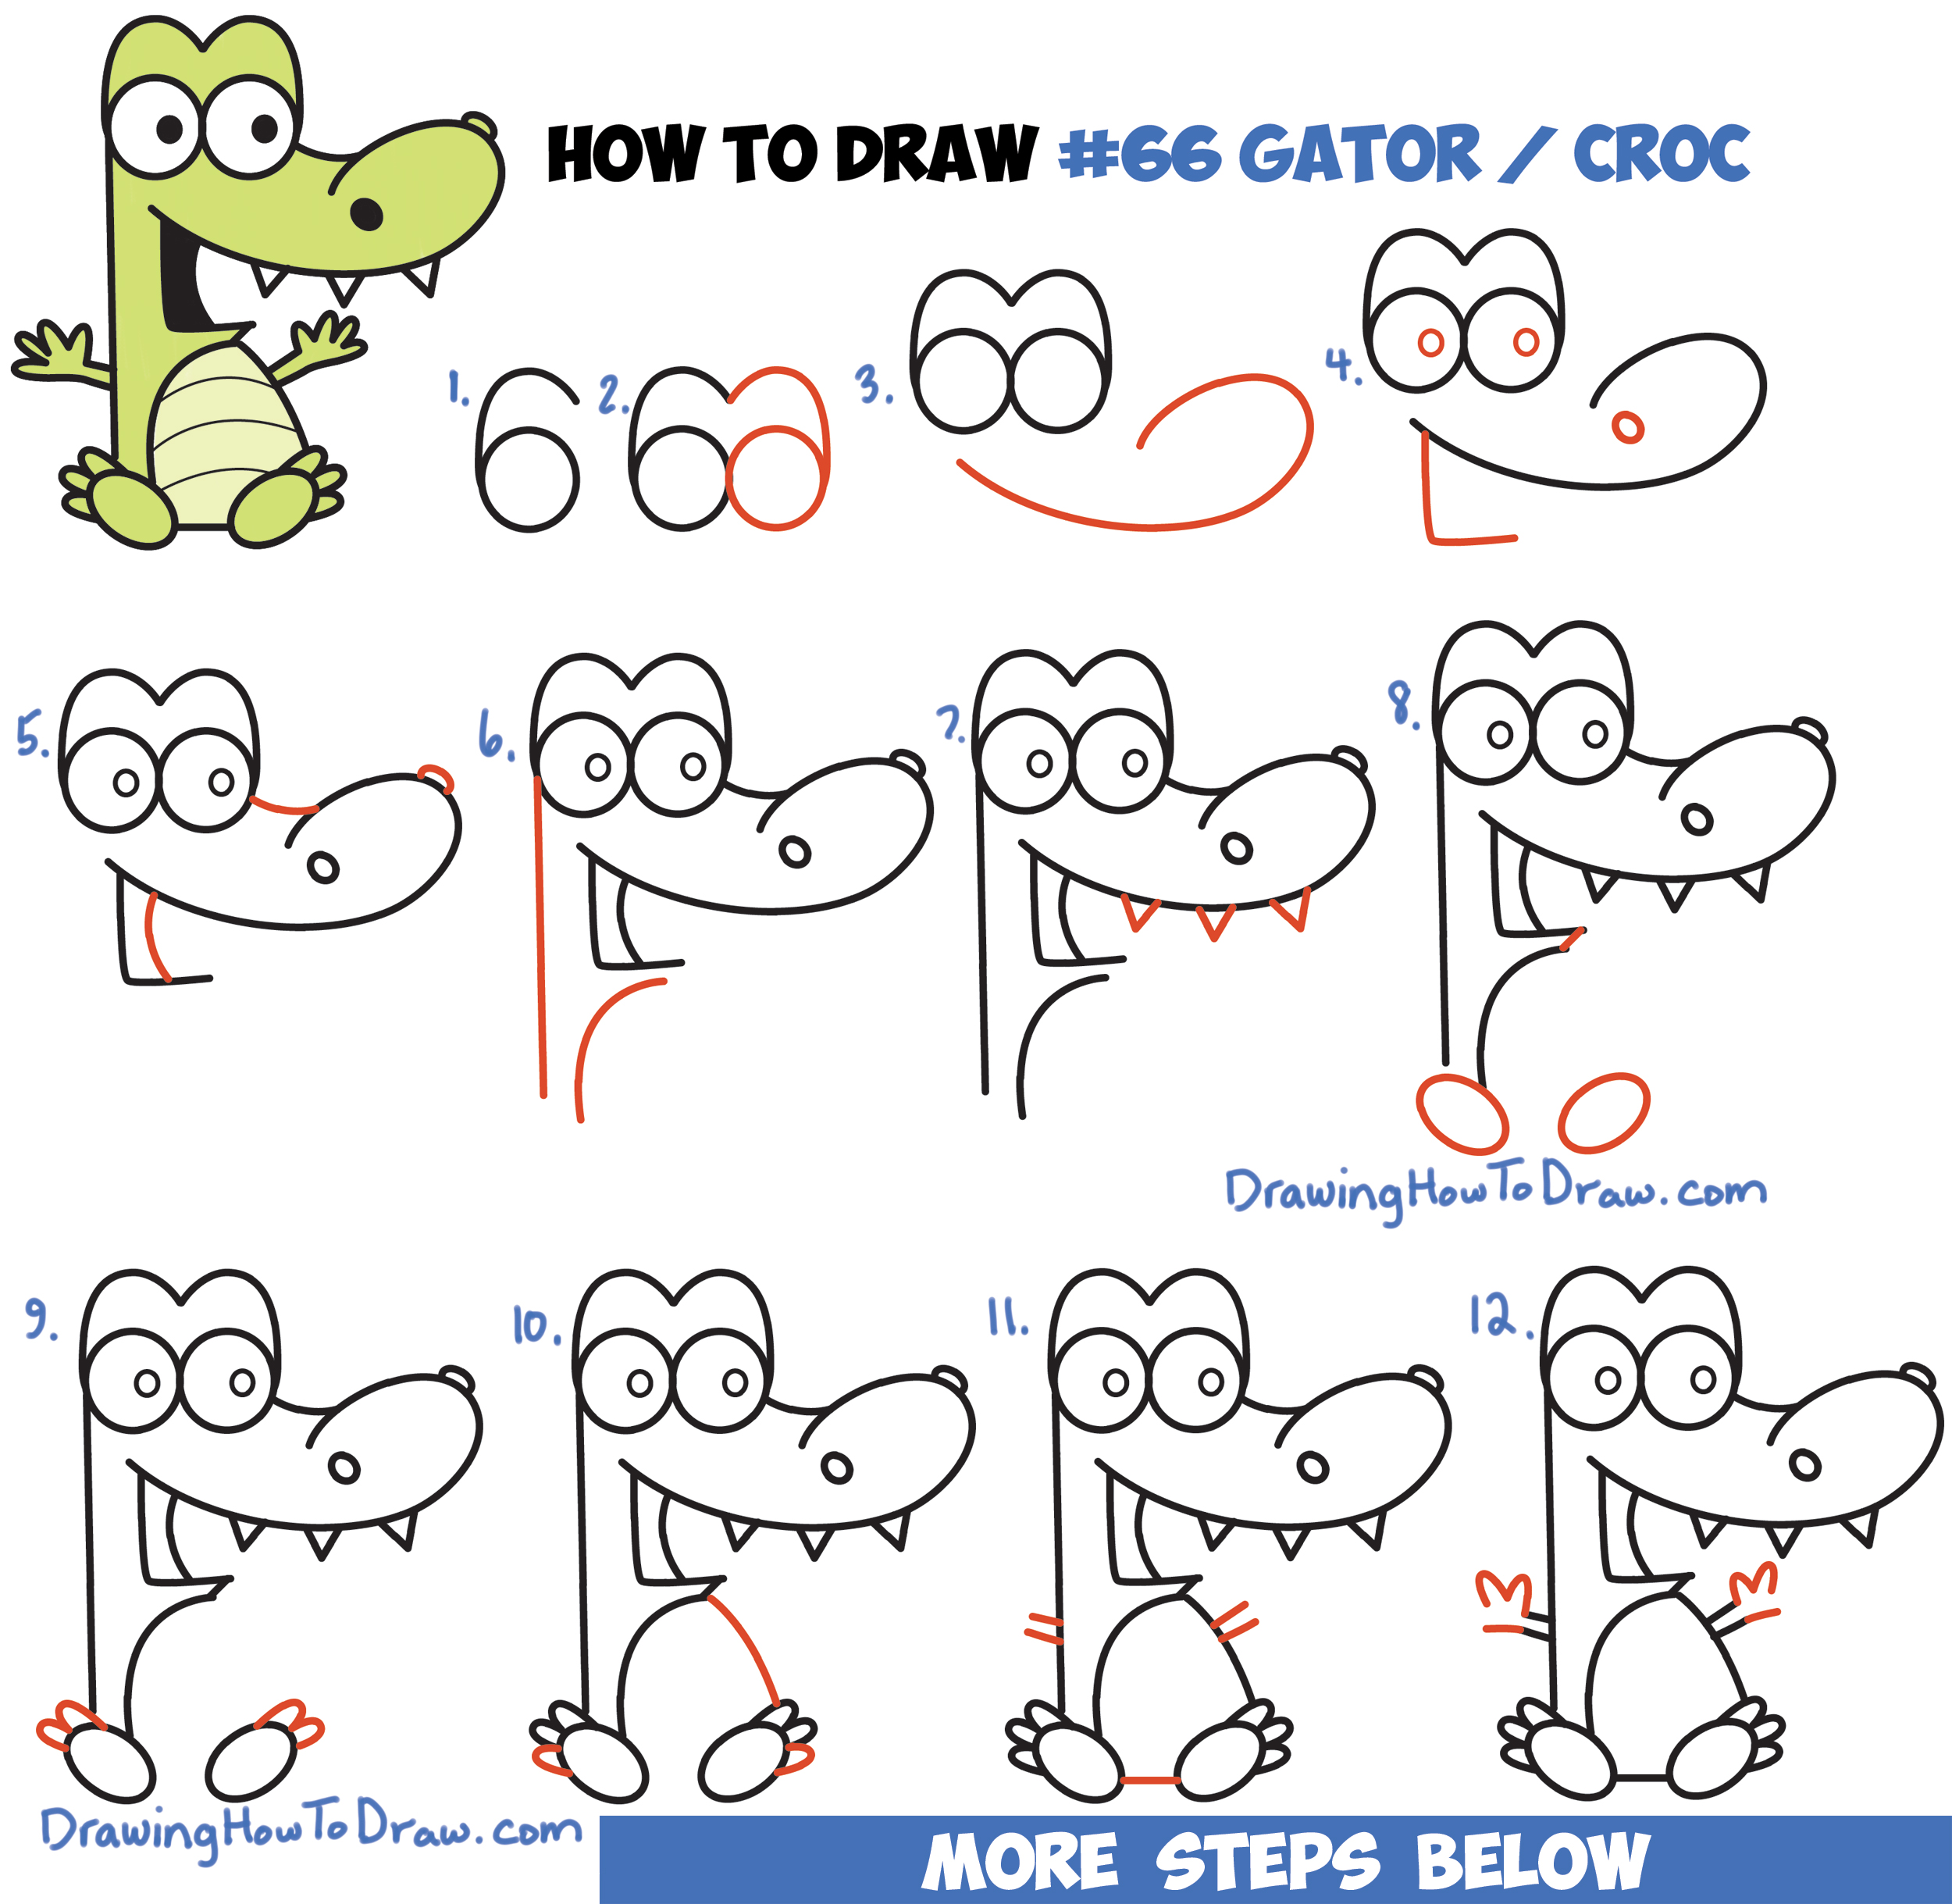 alligator drawing kids